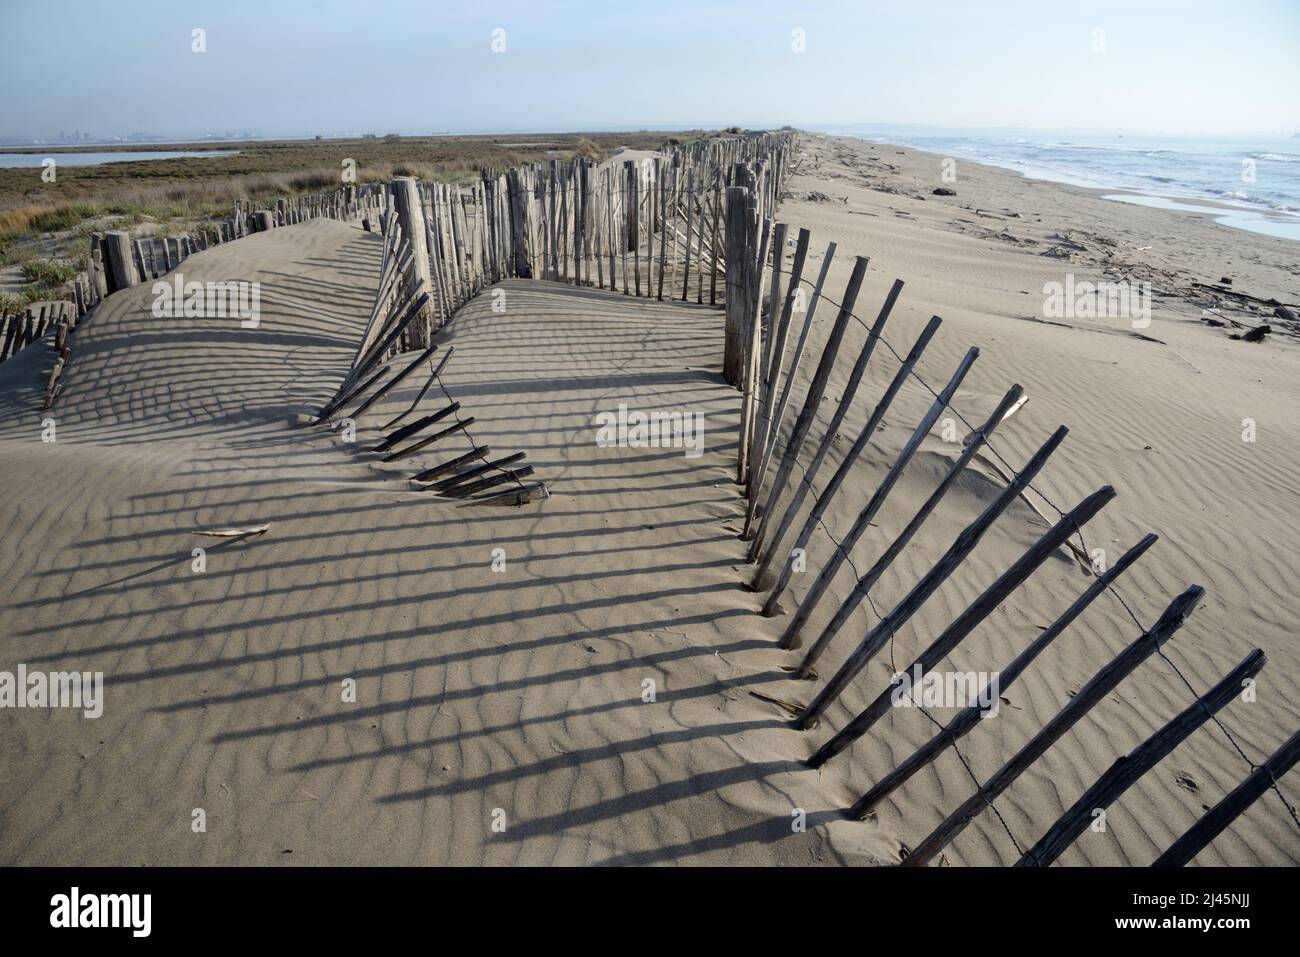 Clôtures en bois limitant l'accès et l'érosion côtière des dunes de sable à Napoleon Beach, ou Plage Napoléon, Port St Louis du Rhône Camargue Provence France Banque D'Images